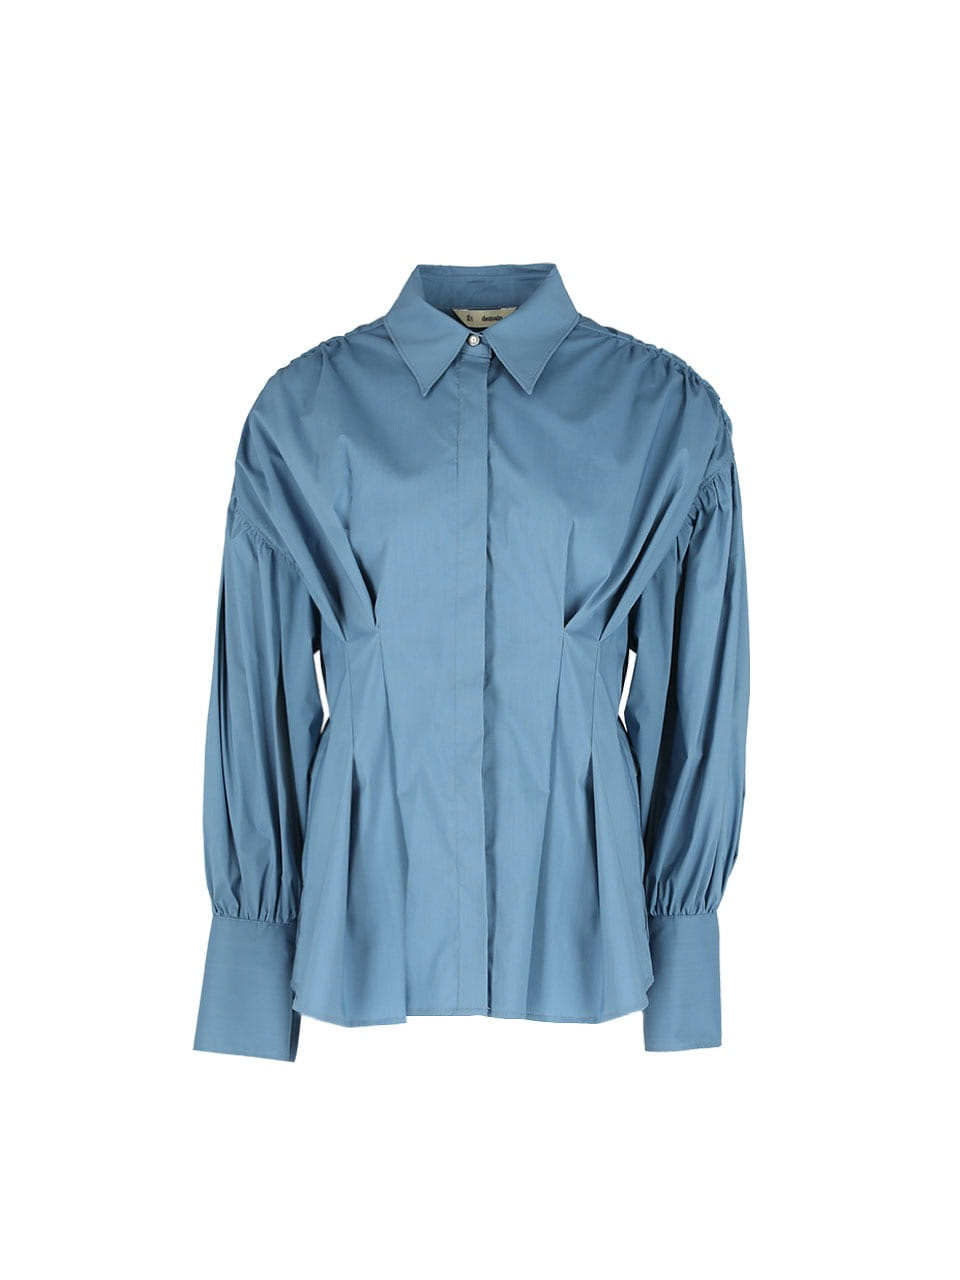 Volume Sleeve Pleated Shirt (Deep Blue)